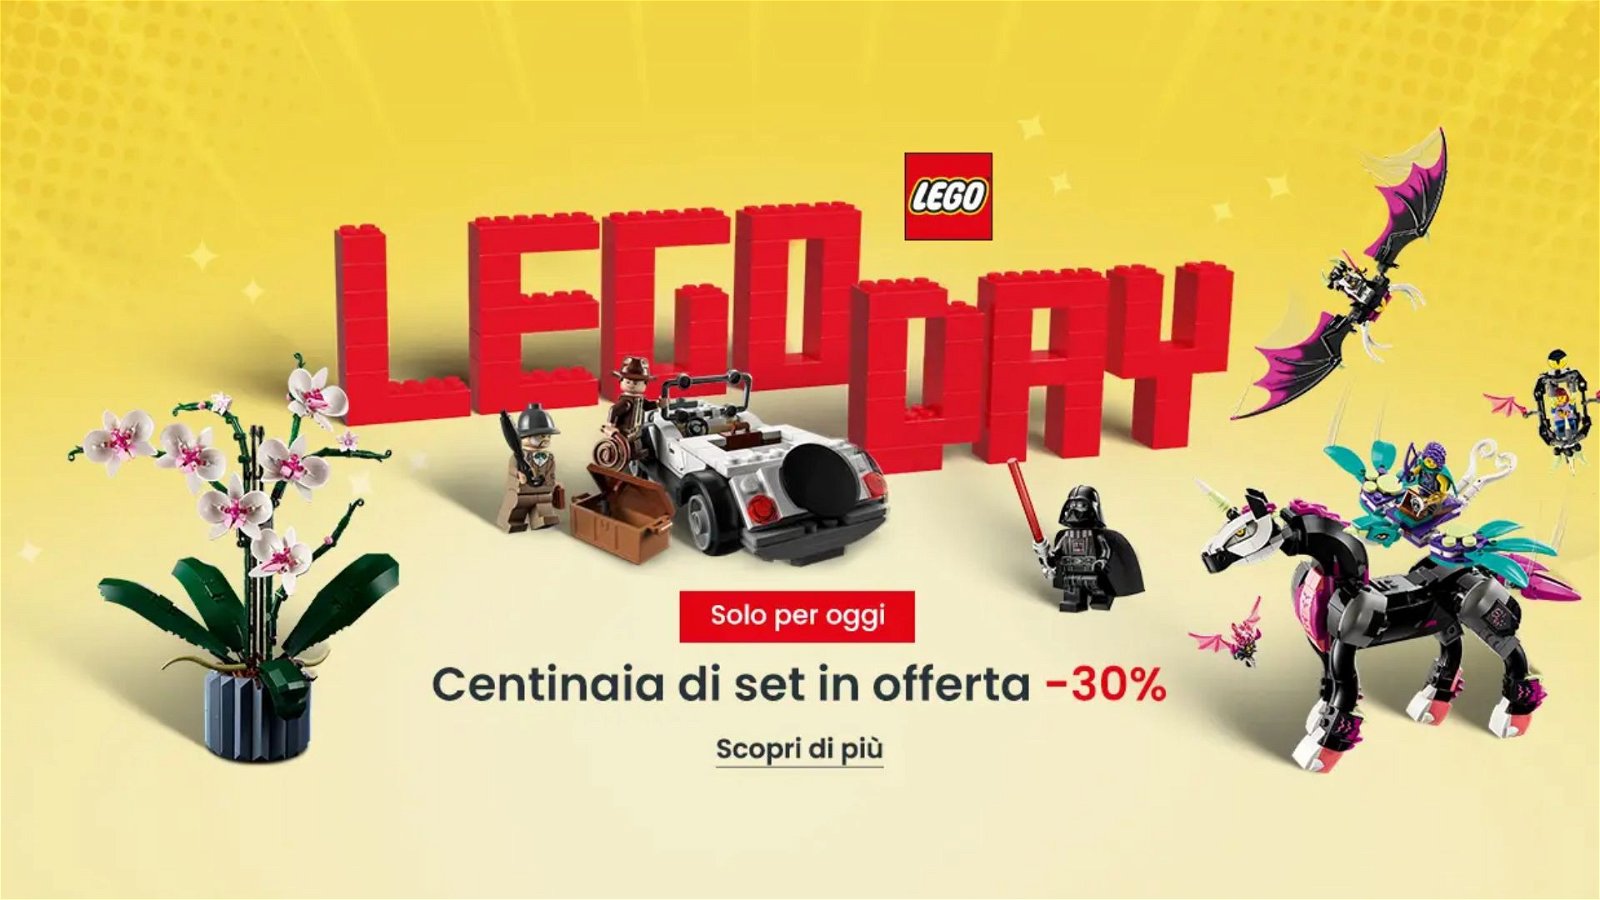 Immagine di LEGO offerte: approfitta di tutti gli sconti del Lego Day